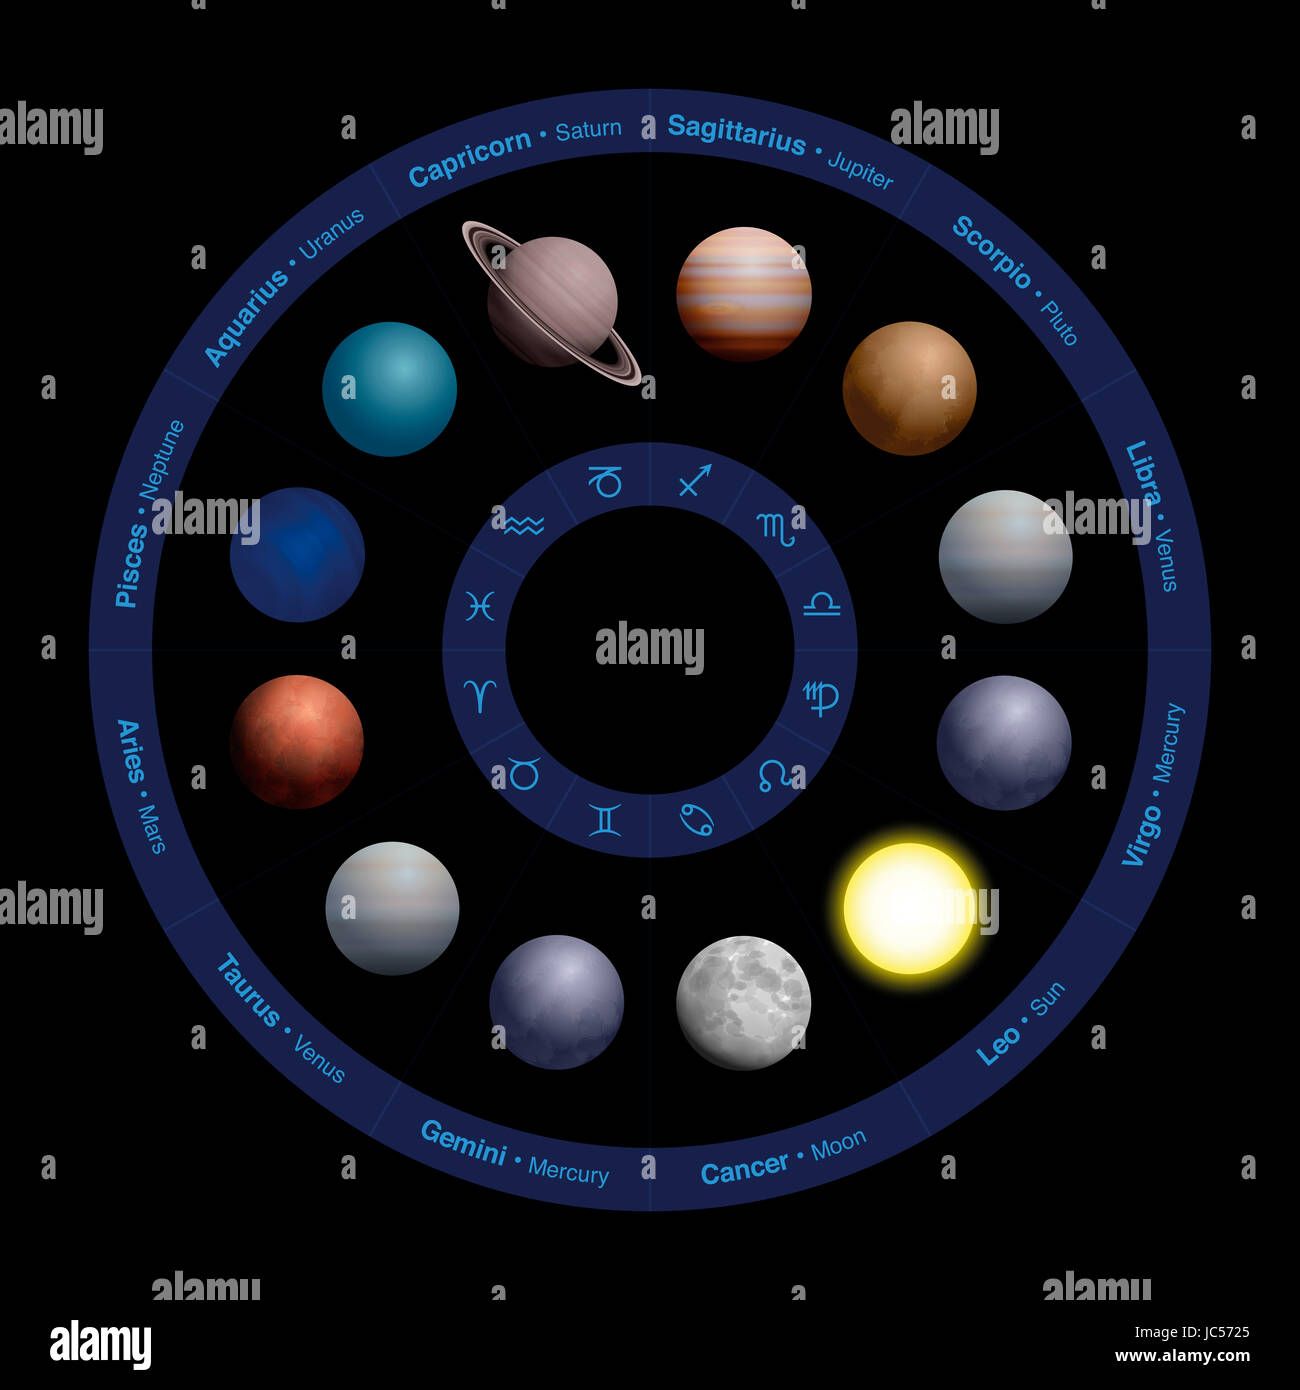 Pianeti di astrologia, design realistico, nel cerchio zodiacale - con i nomi nel cerchio esterno e simboli nel cerchio interno. Illustrazione sul nero. Foto Stock